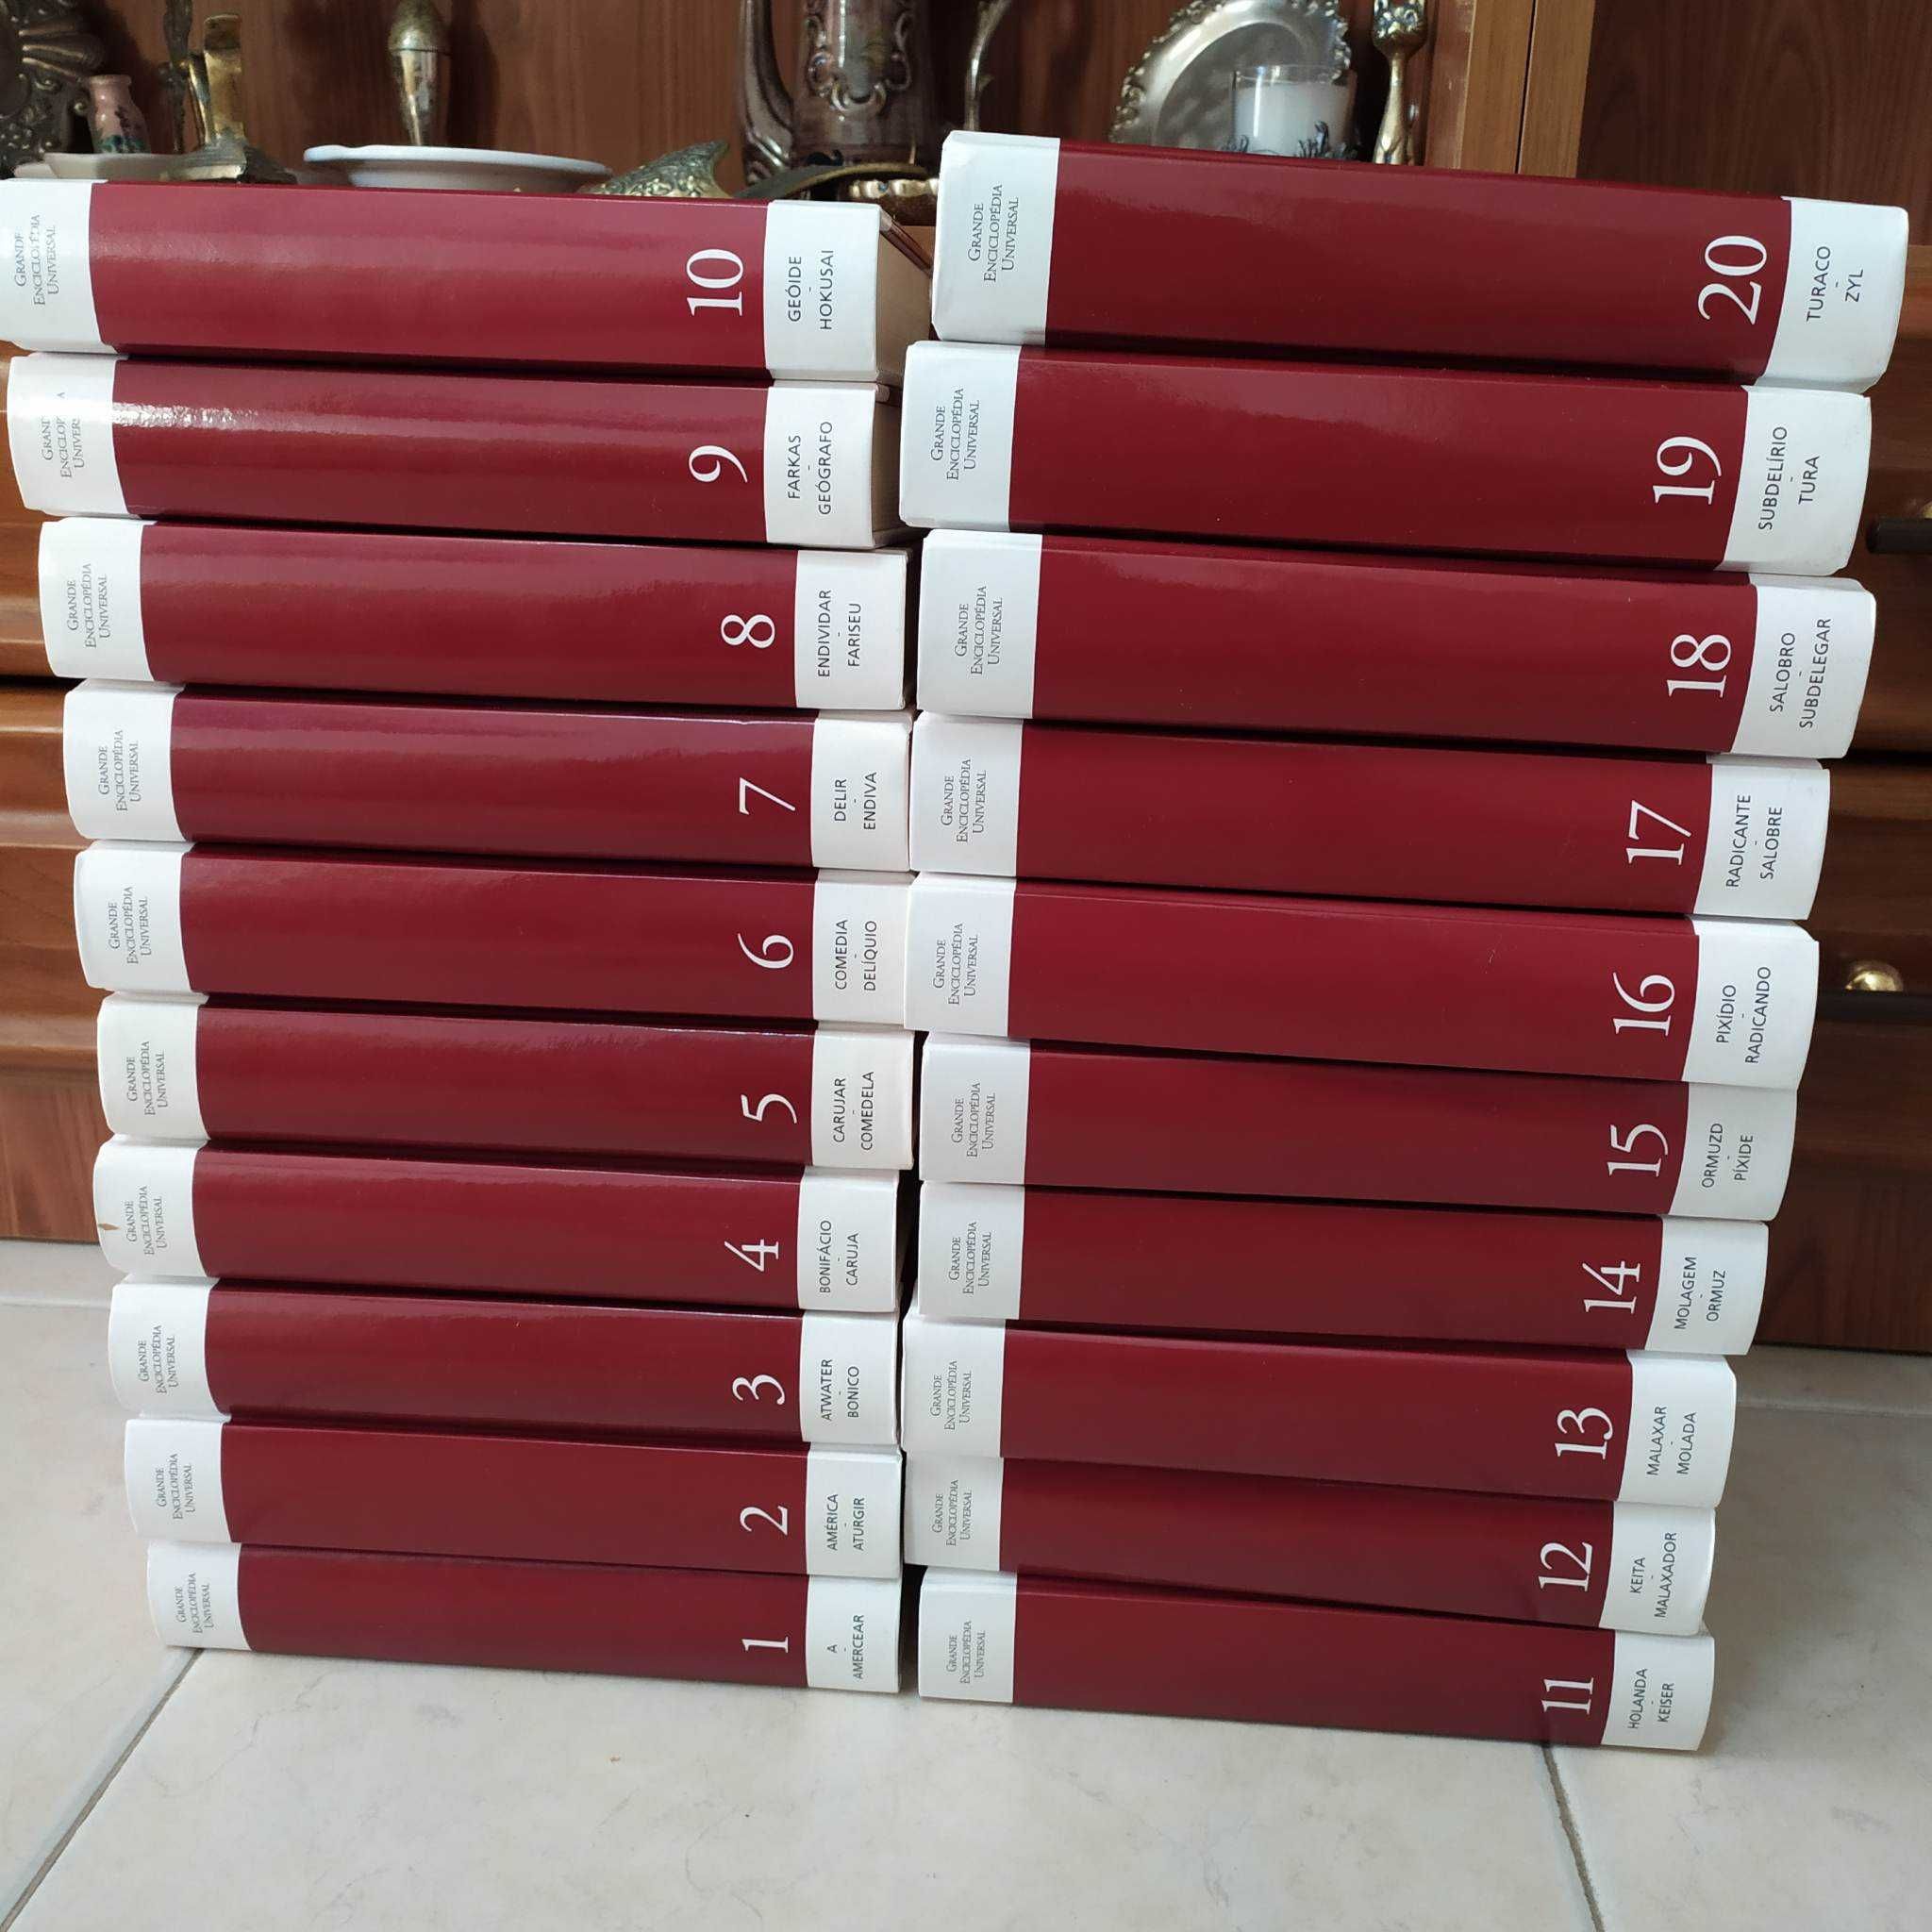 Grande Enciclopédia Universal 20 volumes - URGENTE